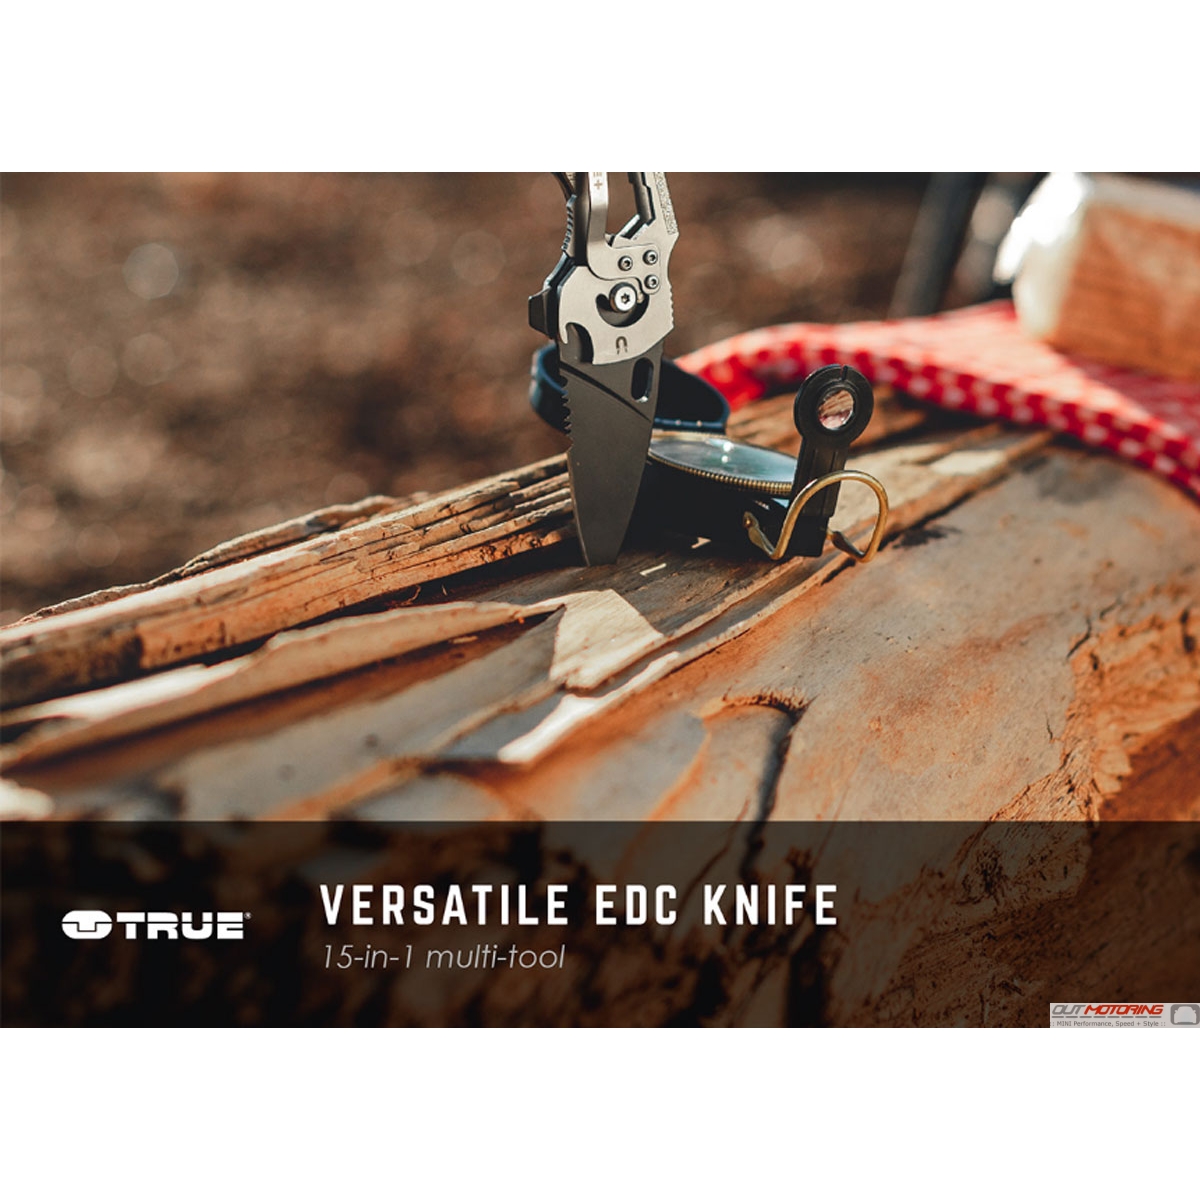 Véritable utilitaire EDC Essentials Kit-smartknife briquet power bank 